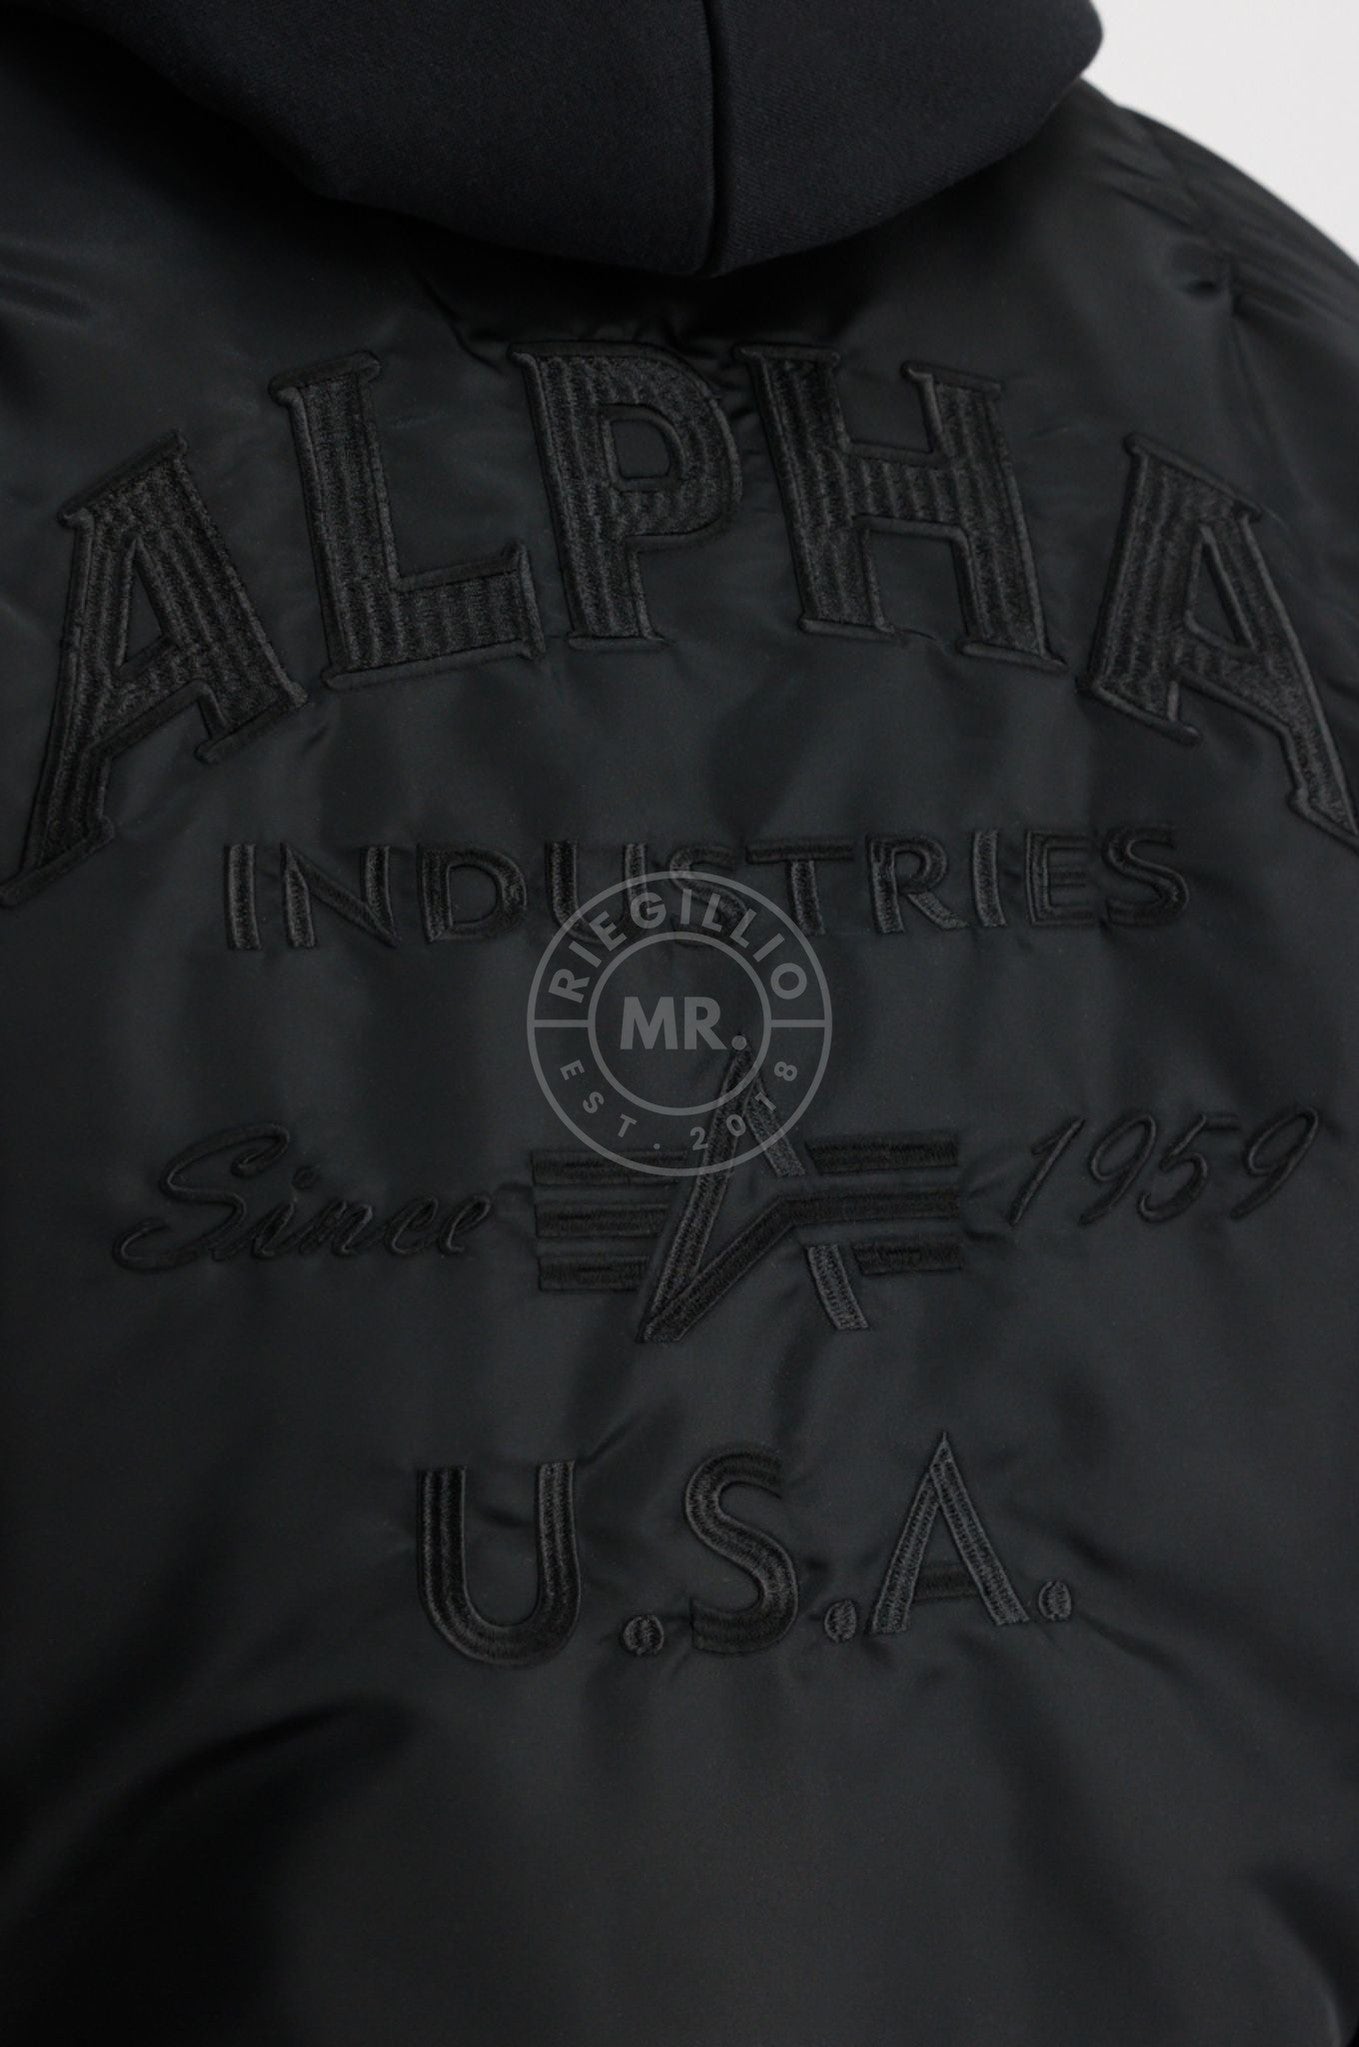 Alpha Industries MA-1 ZH Back EMB Jacket - Black at MR. Riegillio